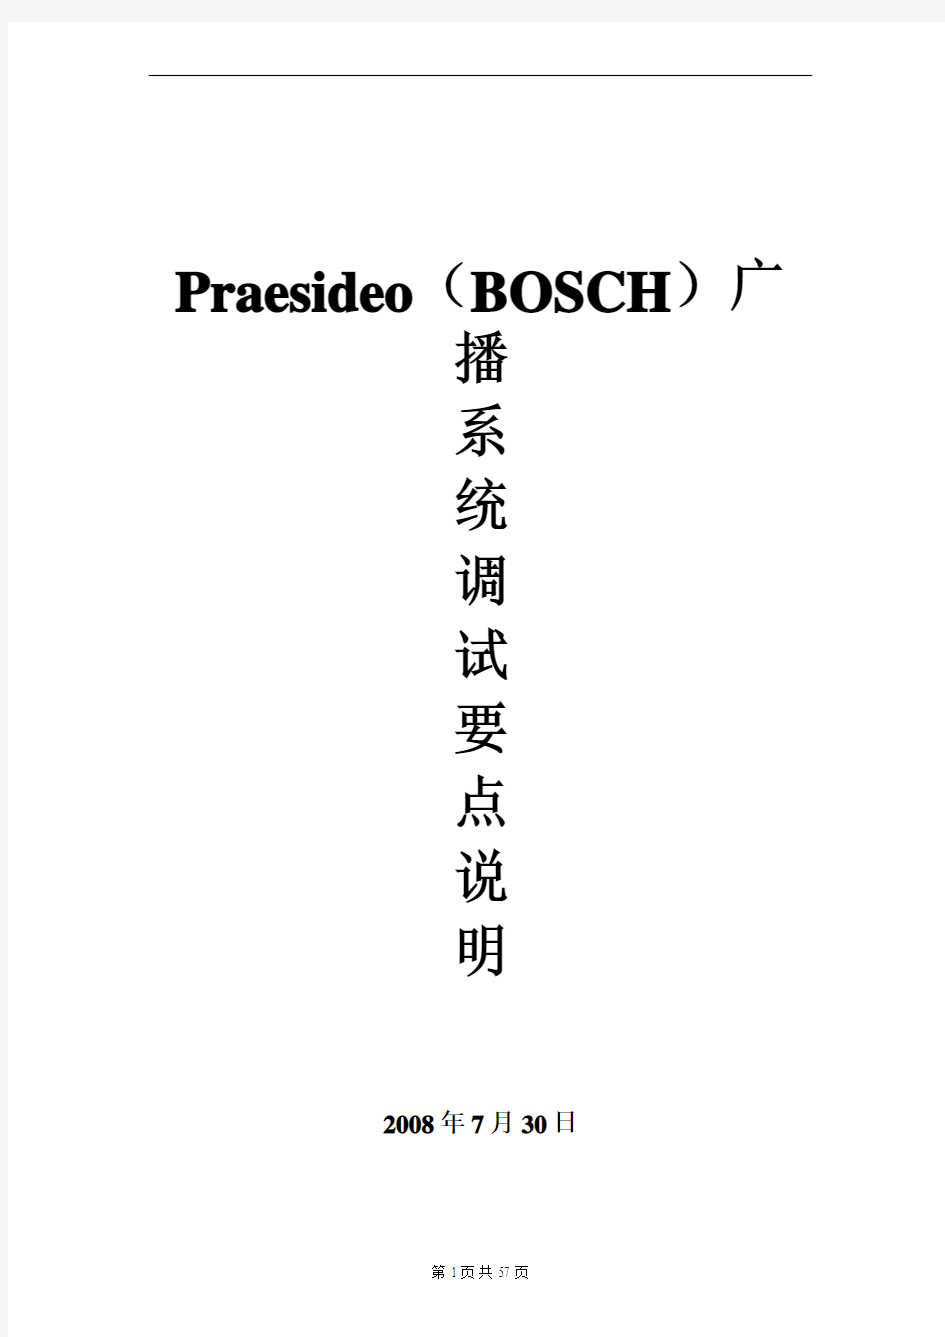 BOSCH Praesideo 广播系统调试手册